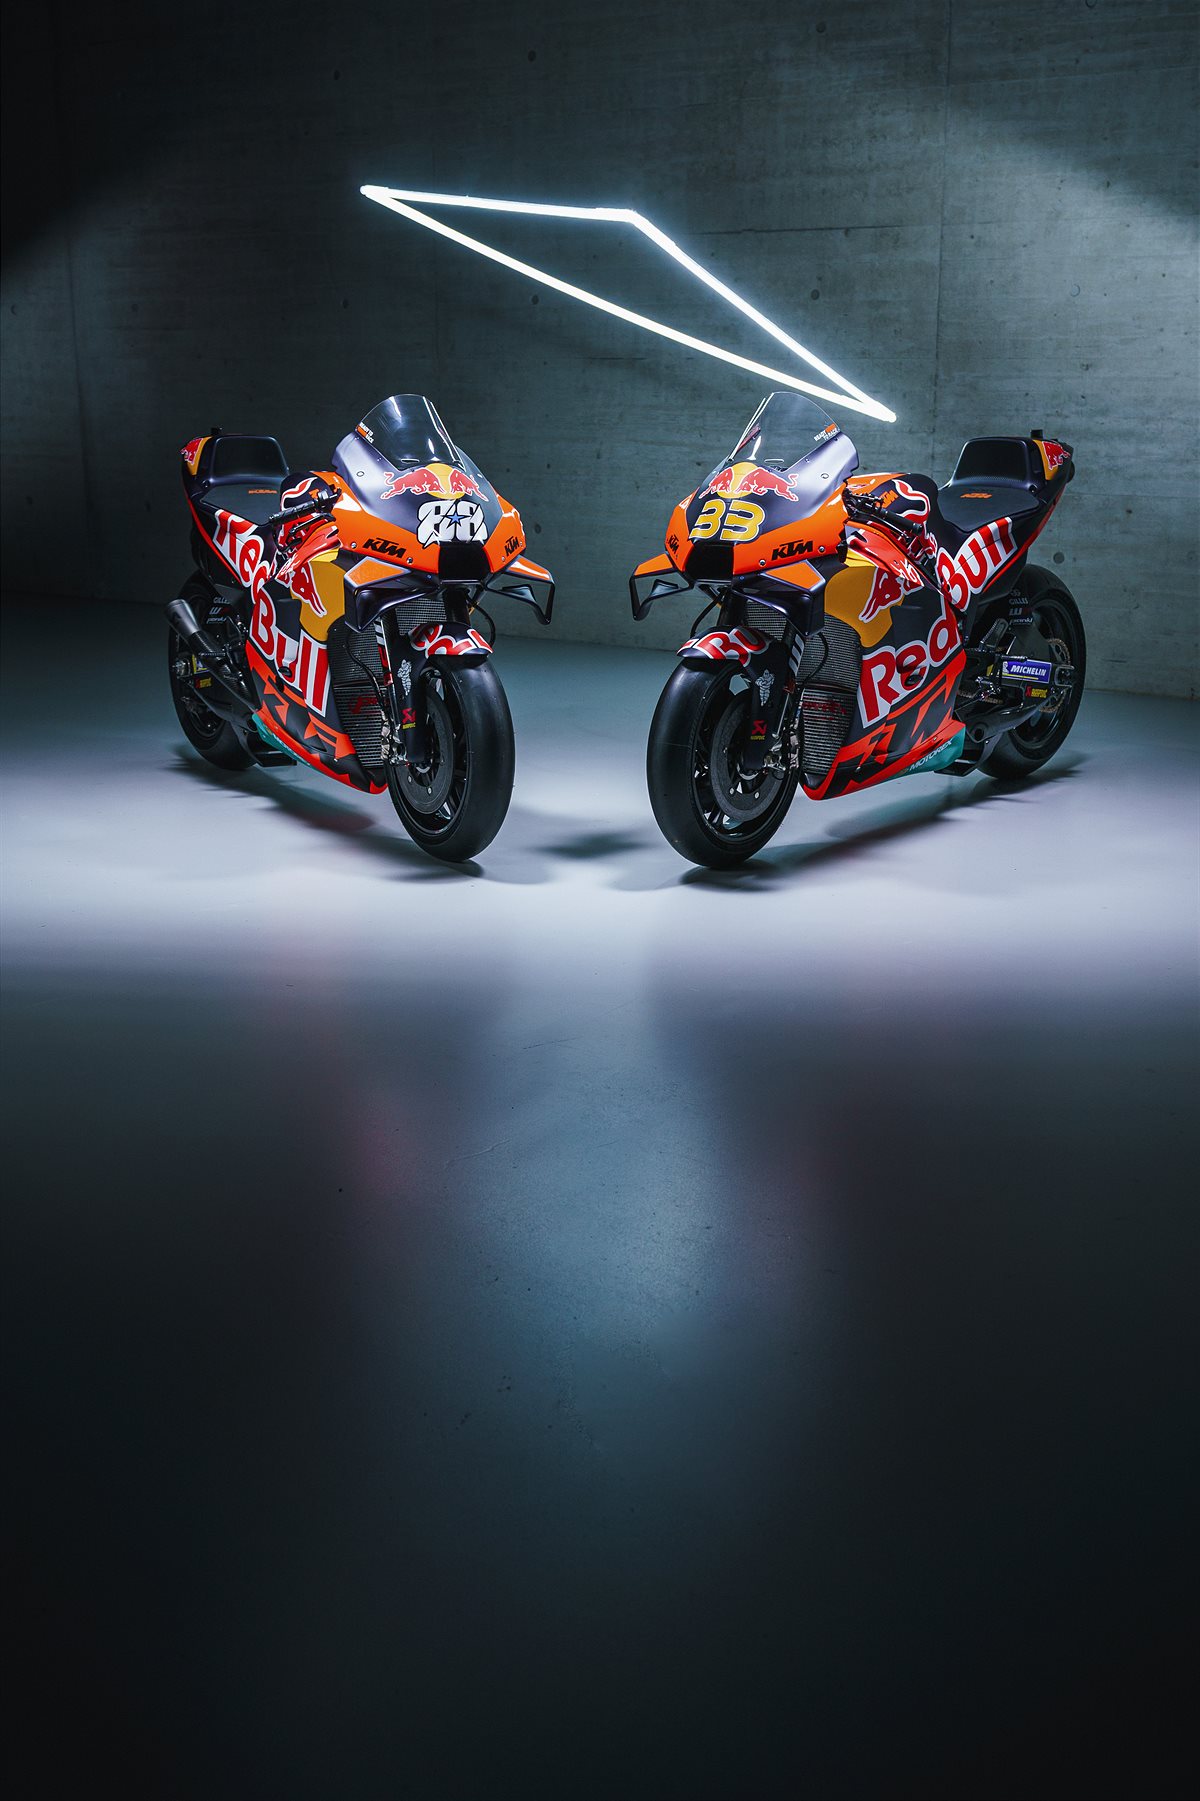 2022 MotoGP launch RC16s: Binder & Oliveira